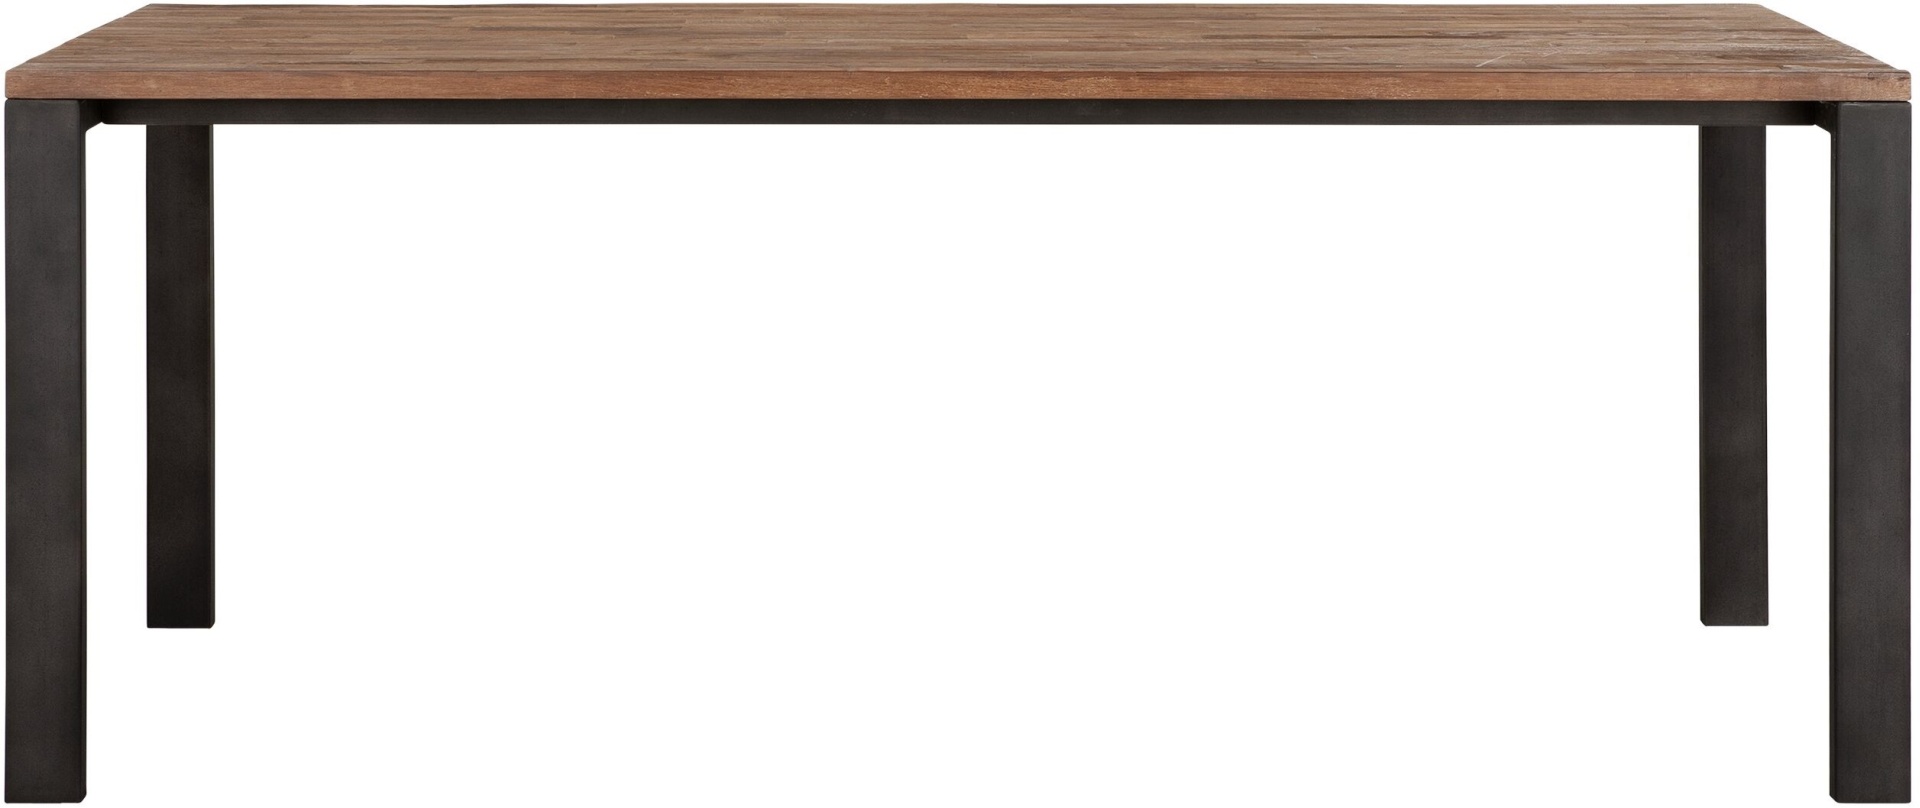 Der Esstisch Track überzeugt mit seinem modern und schlichtem Design. Gefertigt wurde der Tisch aus recyceltem Teakholz, welches einen natürlichen Farbton besitzt. Das Gestell ist aus Metall und ist Schwarz. Der Tisch hat eine Länge von 200 cm und eine Pl